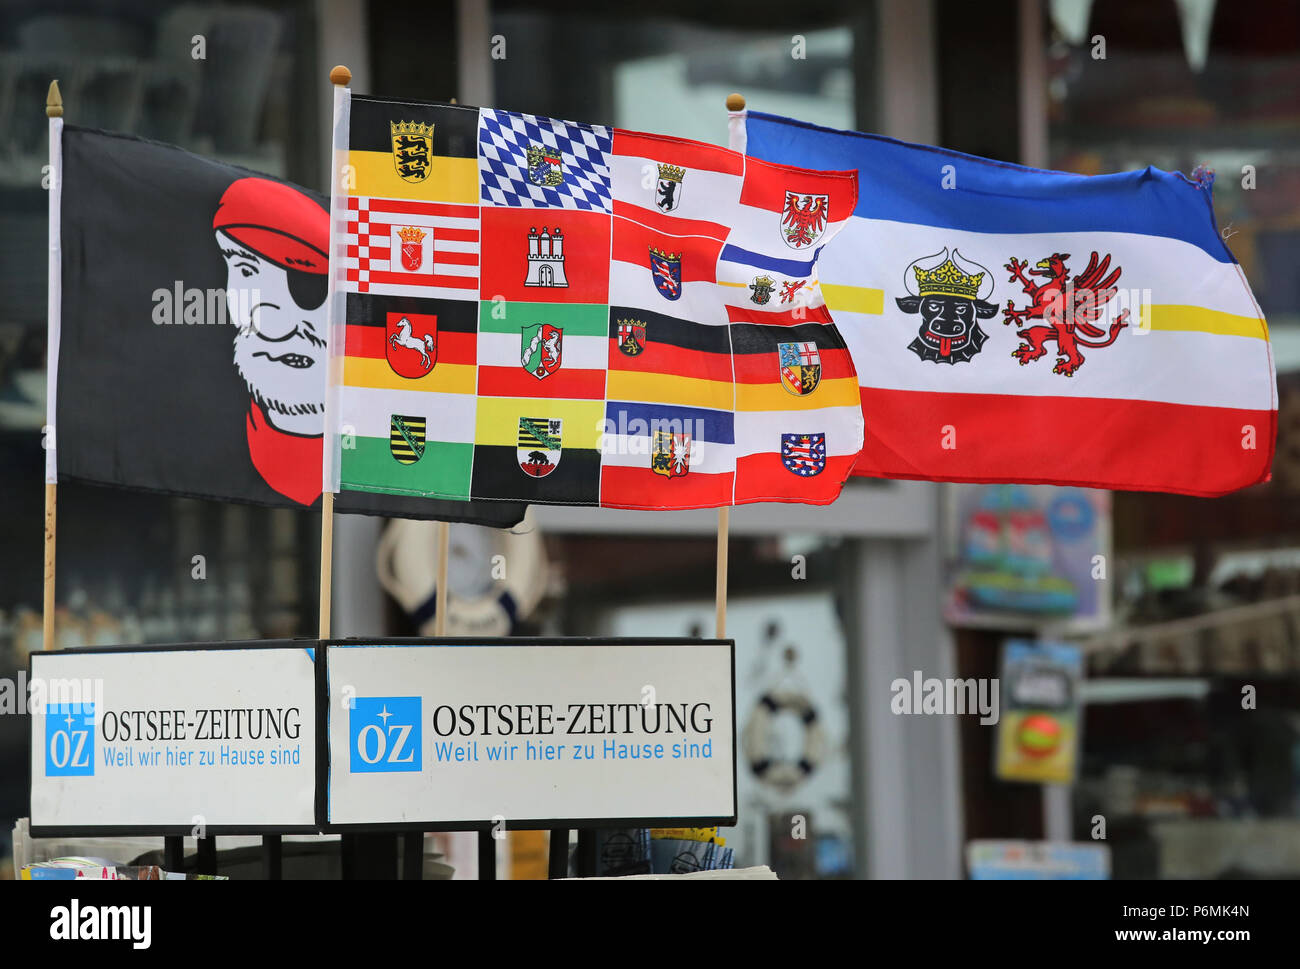 Warnemuende, drapeau de pirate, pavillon de Mecklenburg-Vorpommern et pavillon de l'Bundelaender allemand Banque D'Images